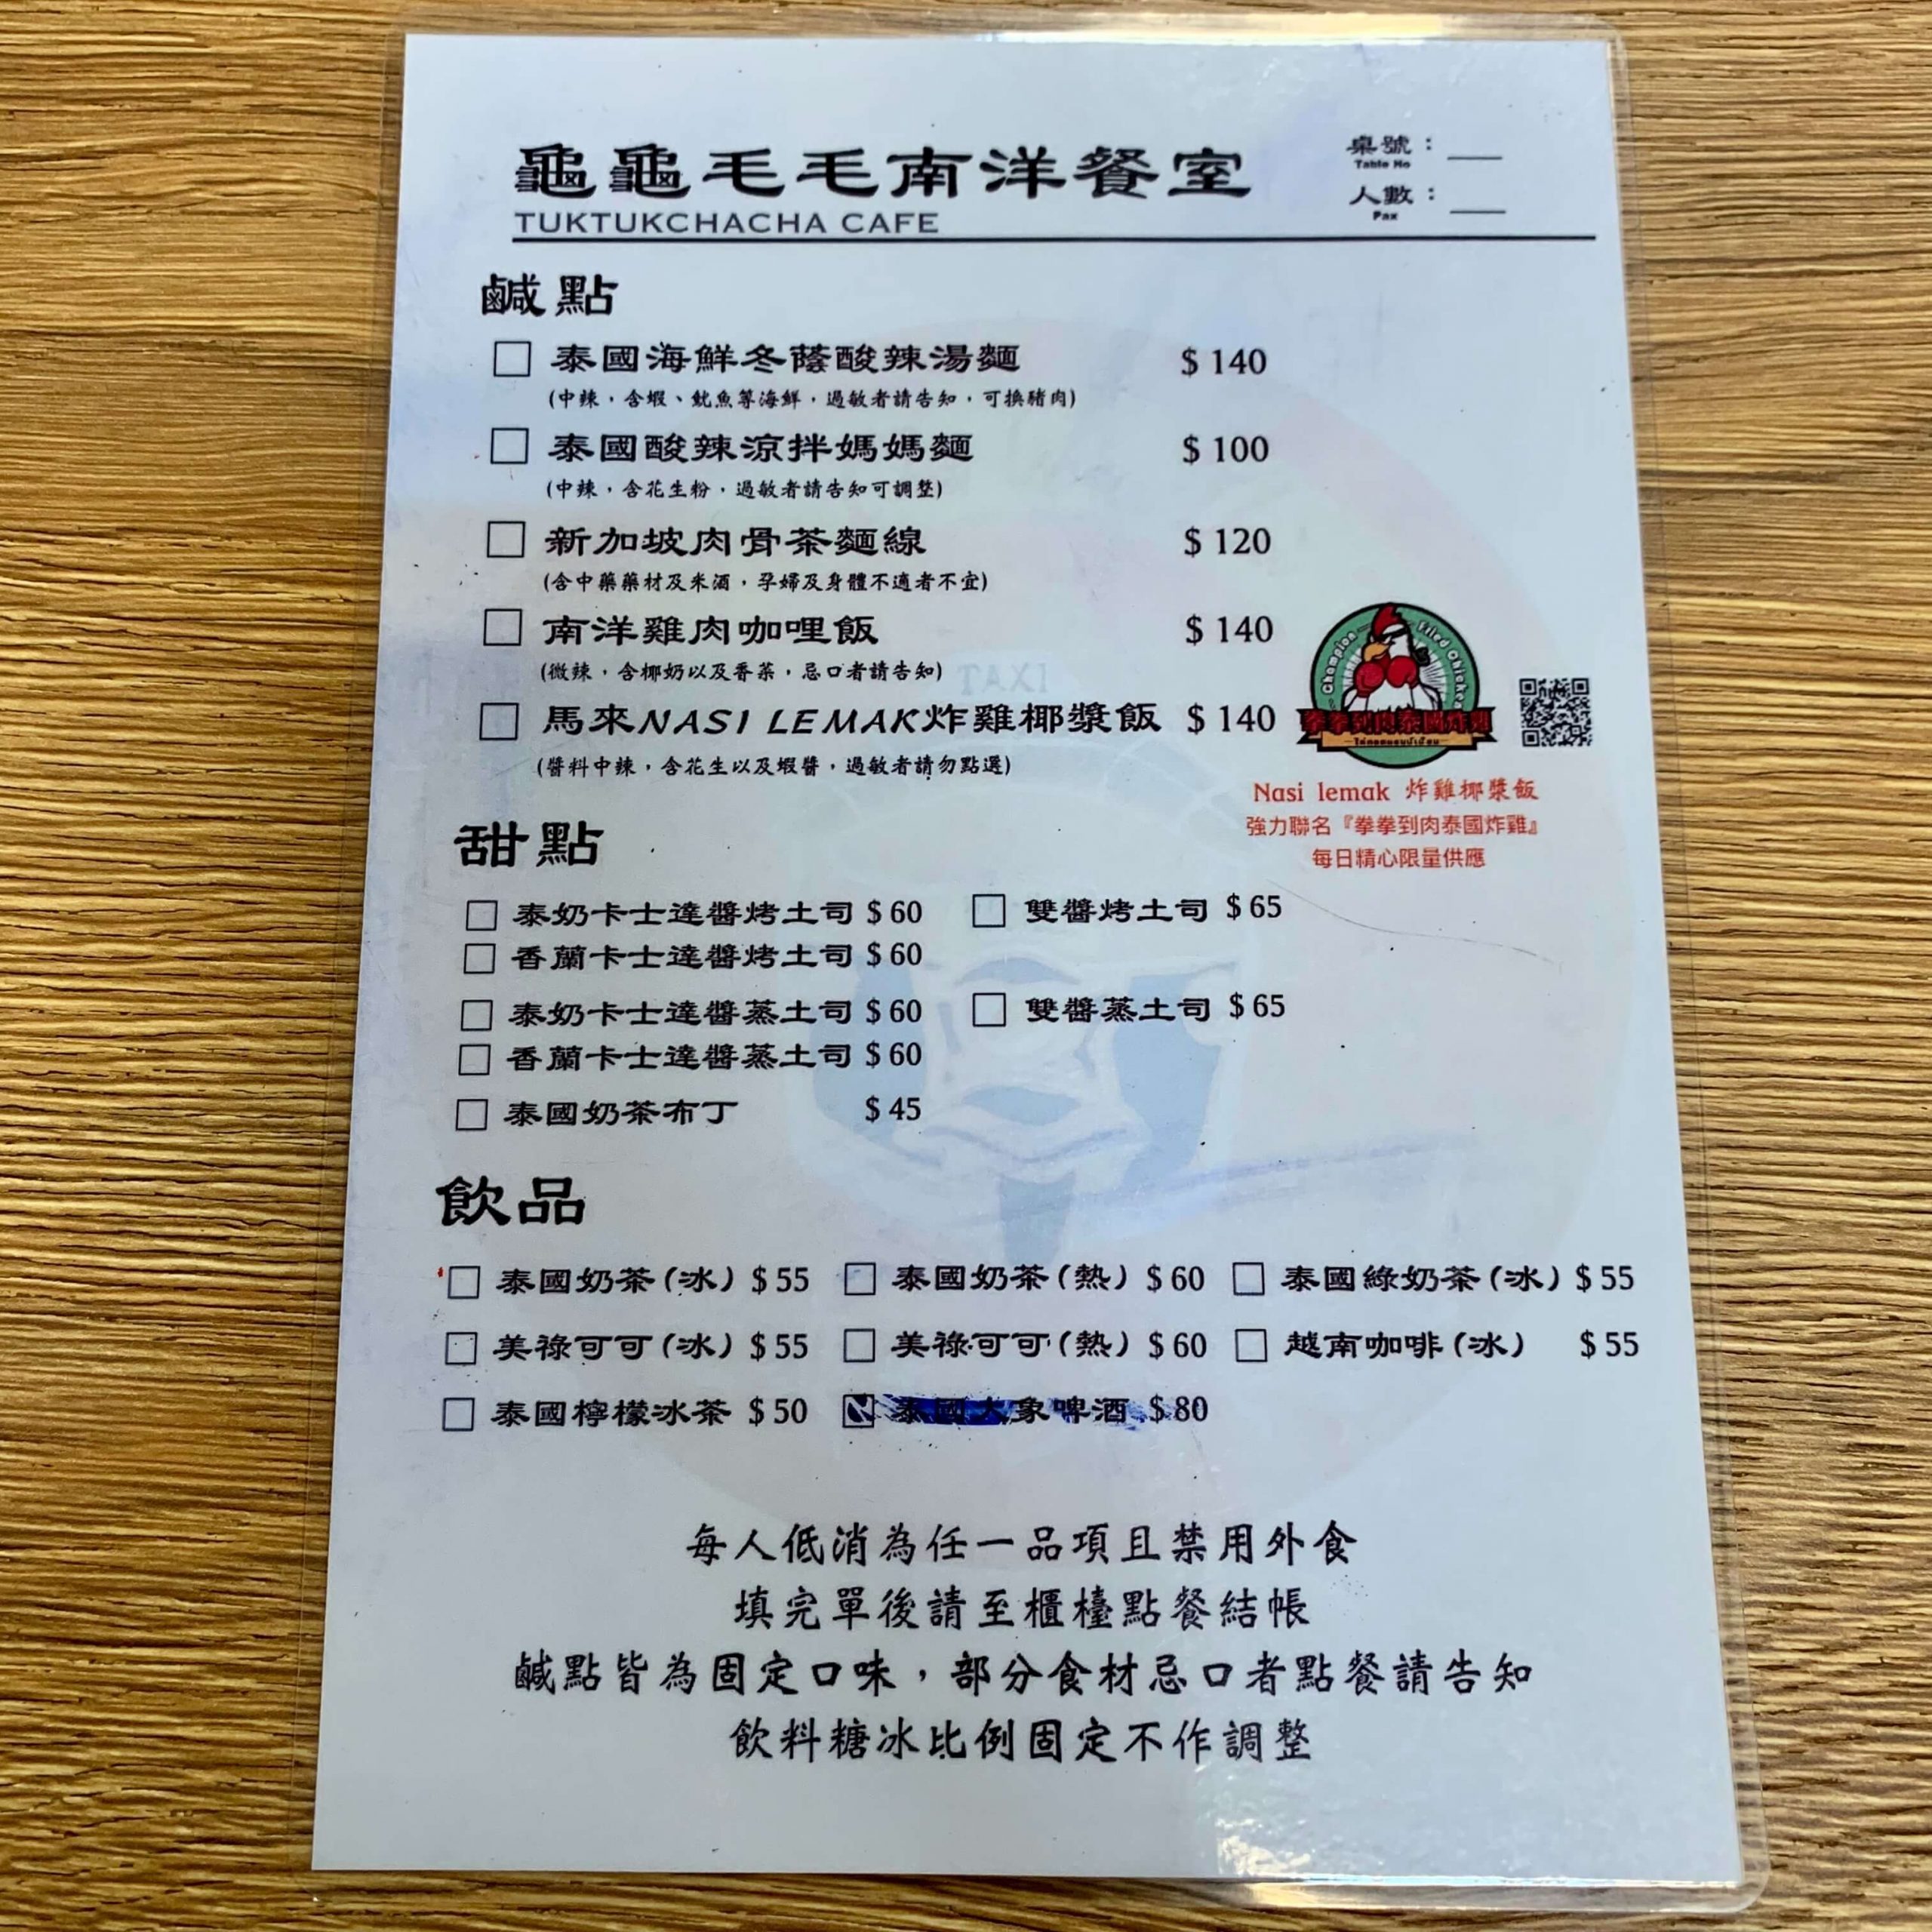 龜龜毛毛南洋餐室菜單MENU